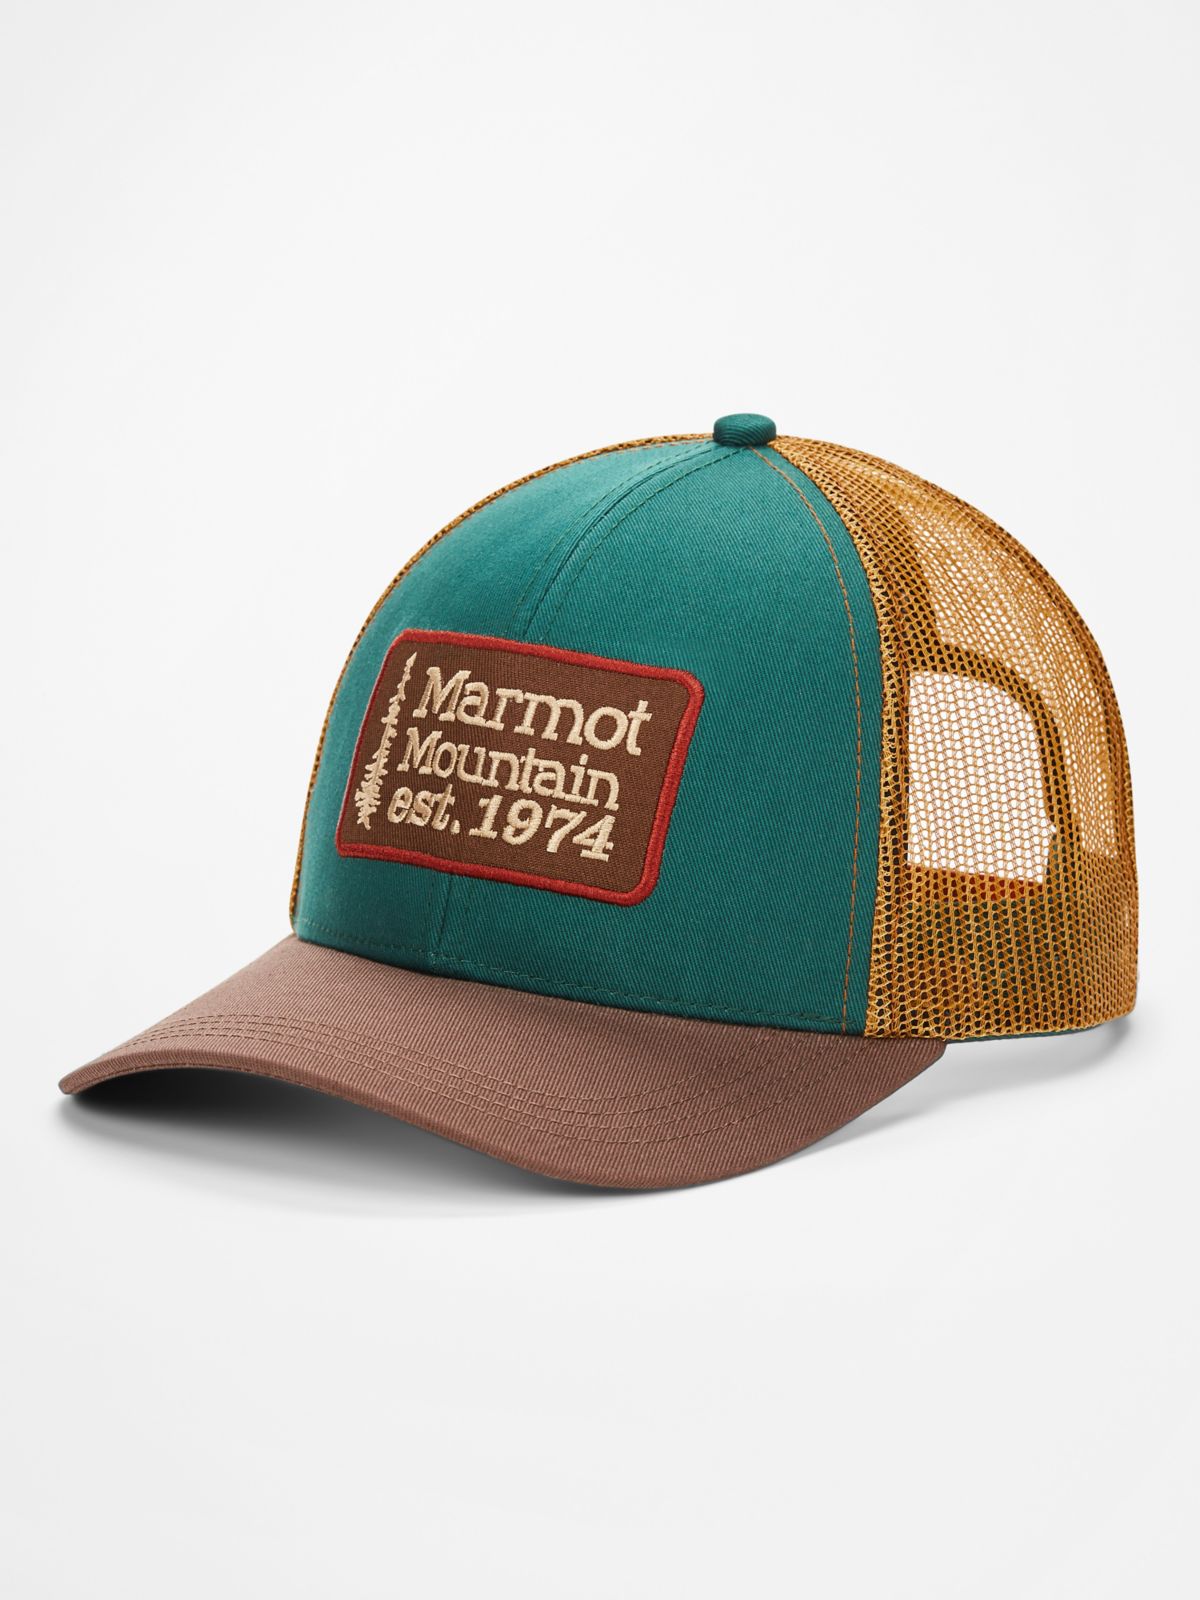 Men's Retro Trucker Hat